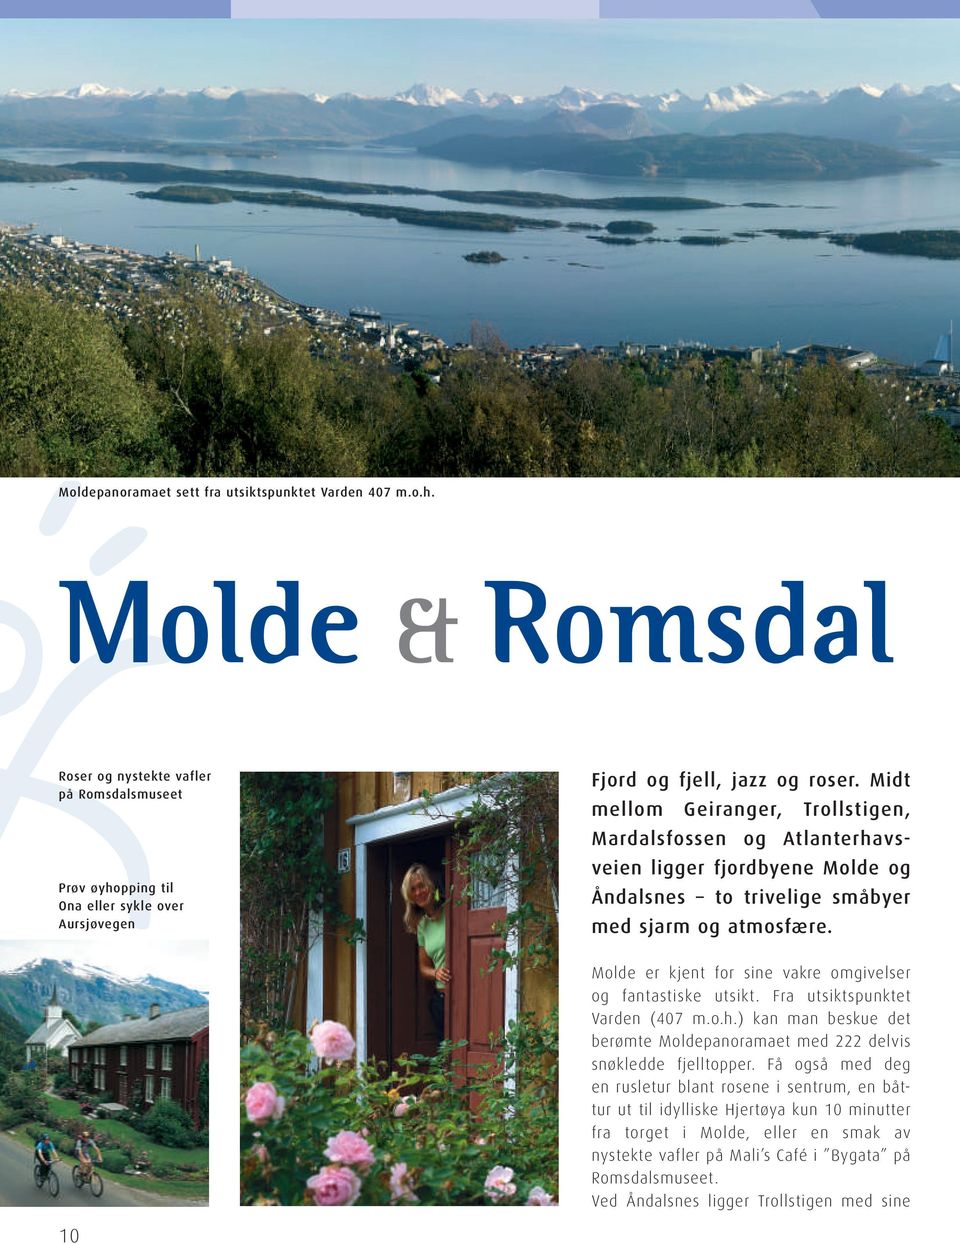 Midt mellom Geiranger, Troll stigen, Mardals fossen og Atlanter havsveien ligger fjordbyene Molde og Åndalsnes to trivelige småbyer med sjarm og atmosfære.